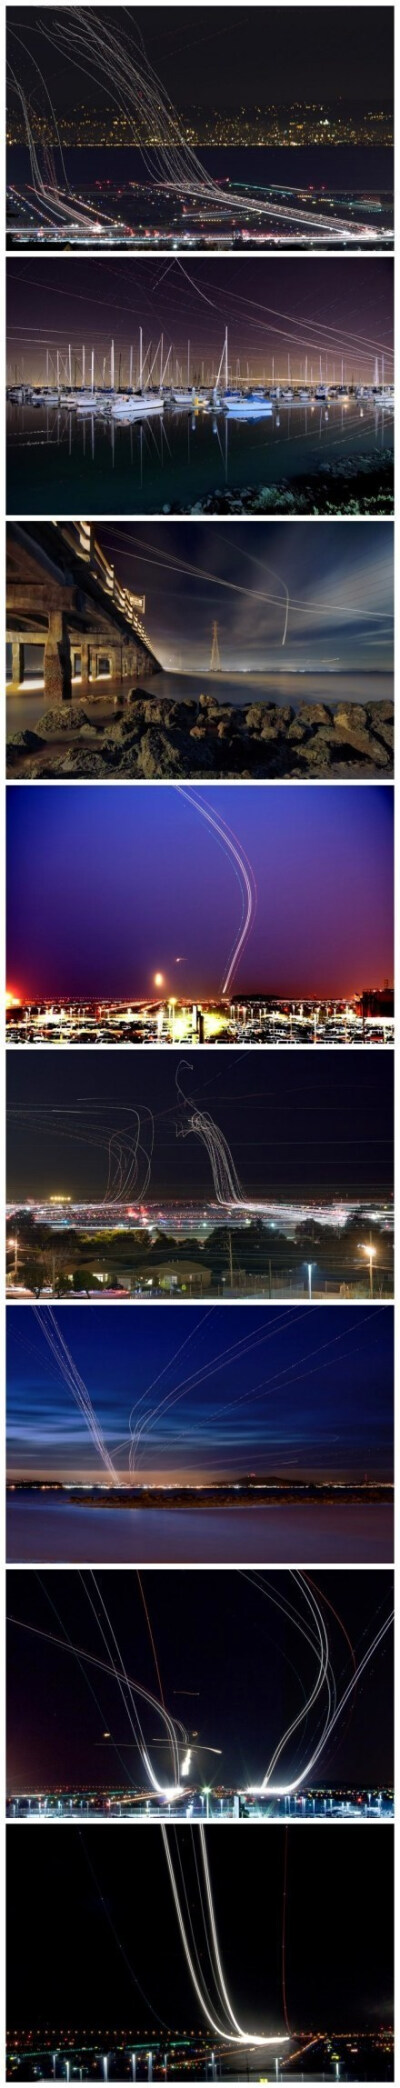 划破夜空的不一定是流星和焰火，也有可能是飞机！来自旧金山摄影师 Terence Chang